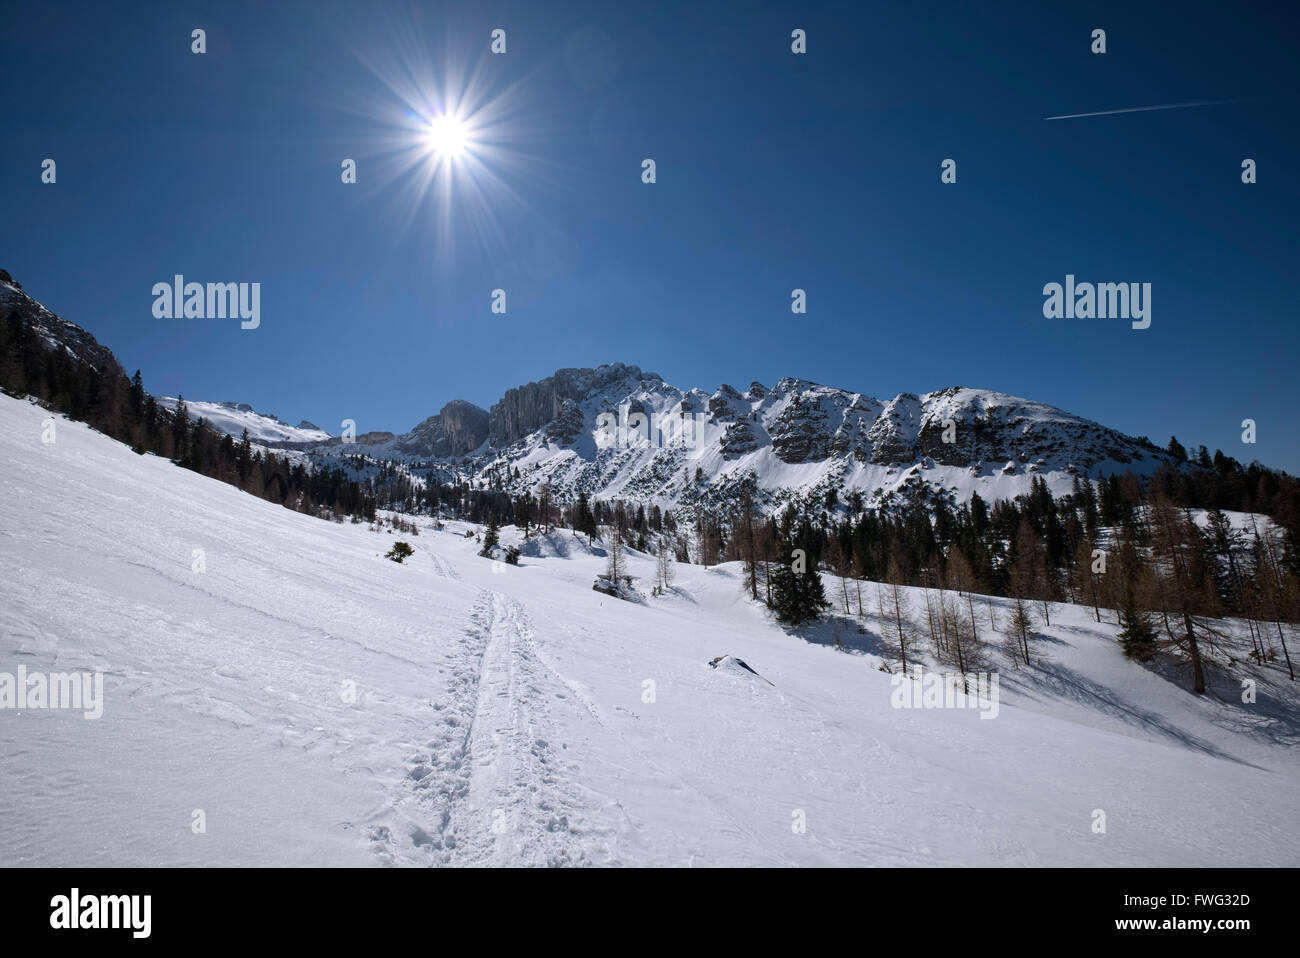 Les pistes de ski et de raquette à neige, paysage de montagne ensoleillée, Landhaus, Tyrol, Autriche Banque D'Images